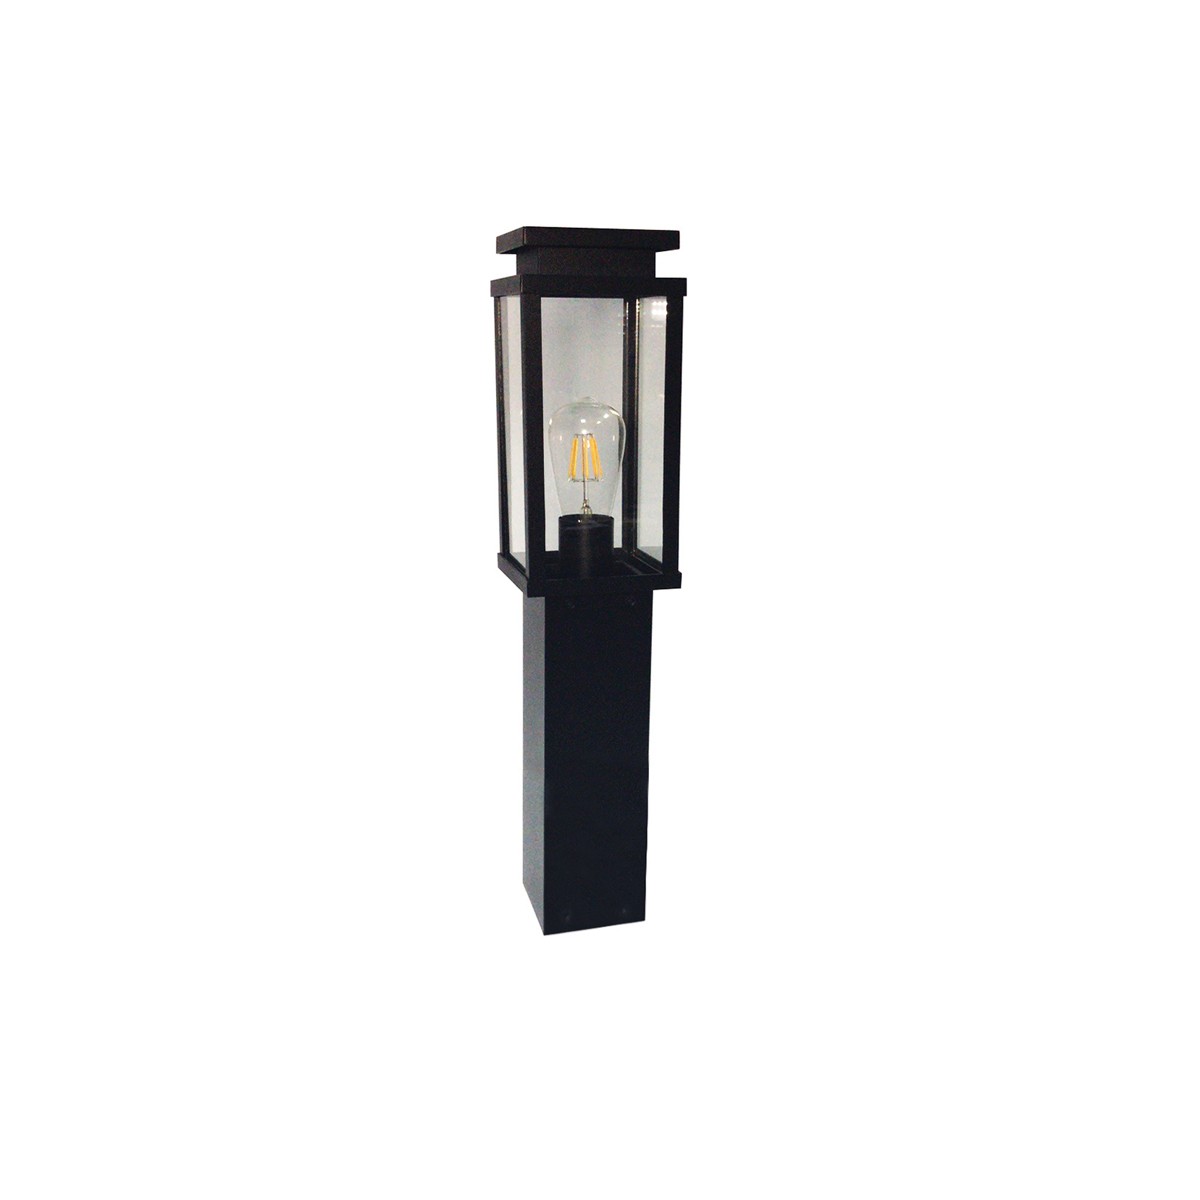 Φωτιστικό Φανάρι Αλουμινίου ΚολώναIP33 E27 600mm Μαύρο Χρώμα       VK/03066/60/B